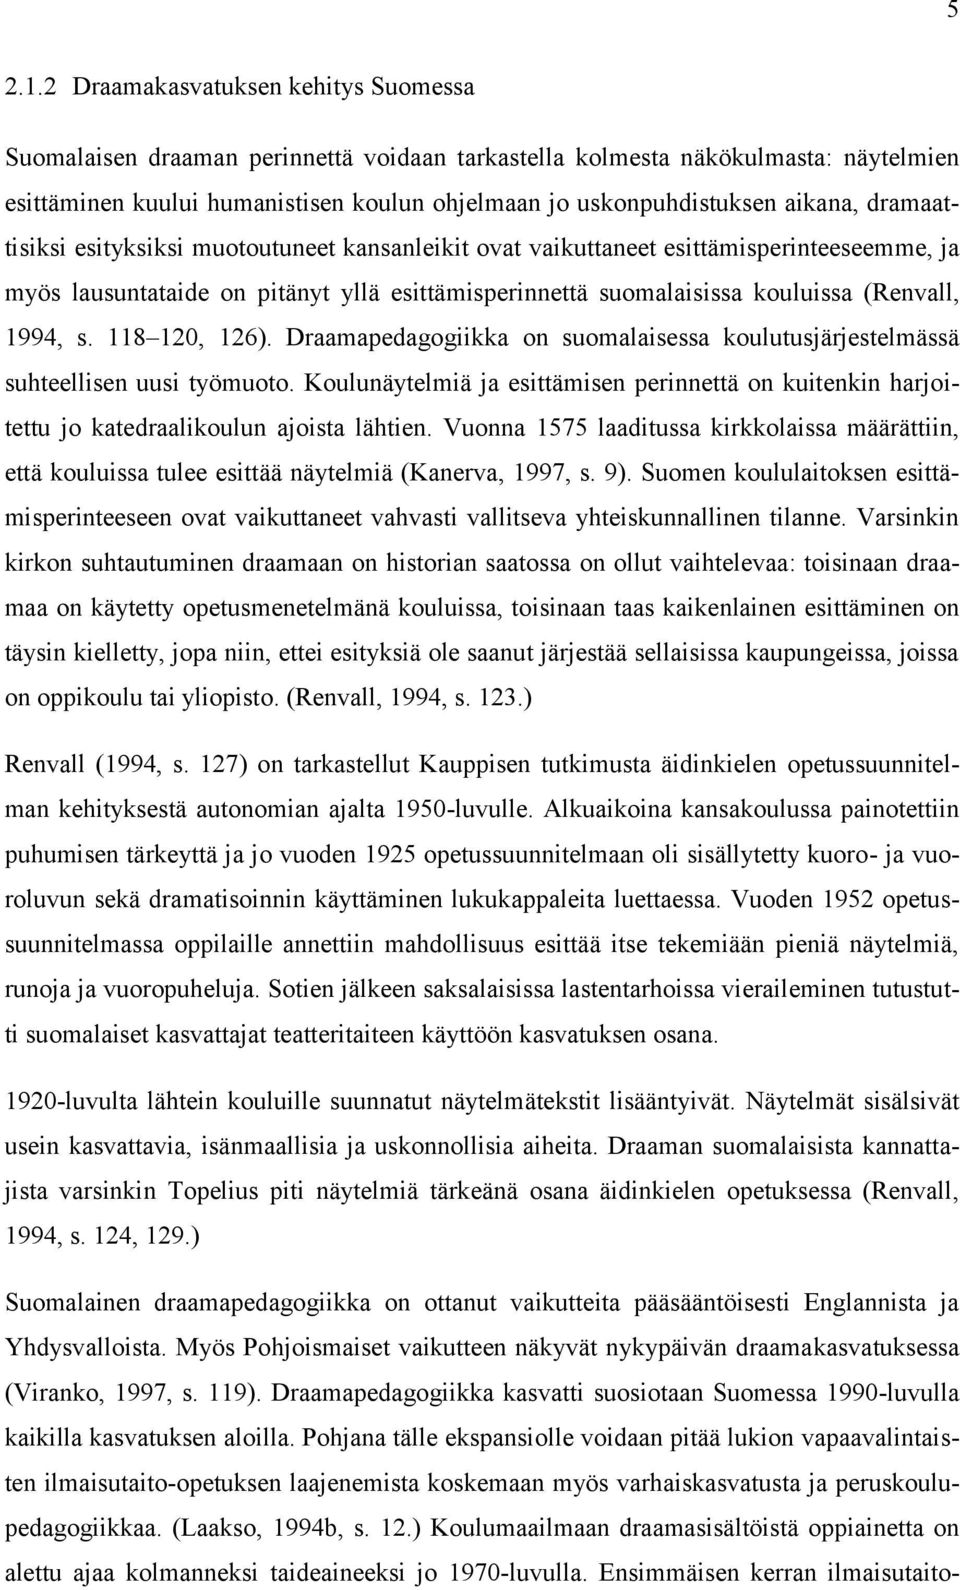 dramaattisiksi esityksiksi muotoutuneet kansanleikit ovat vaikuttaneet esittämisperinteeseemme, ja myös lausuntataide on pitänyt yllä esittämisperinnettä suomalaisissa kouluissa (Renvall, 1994, s.